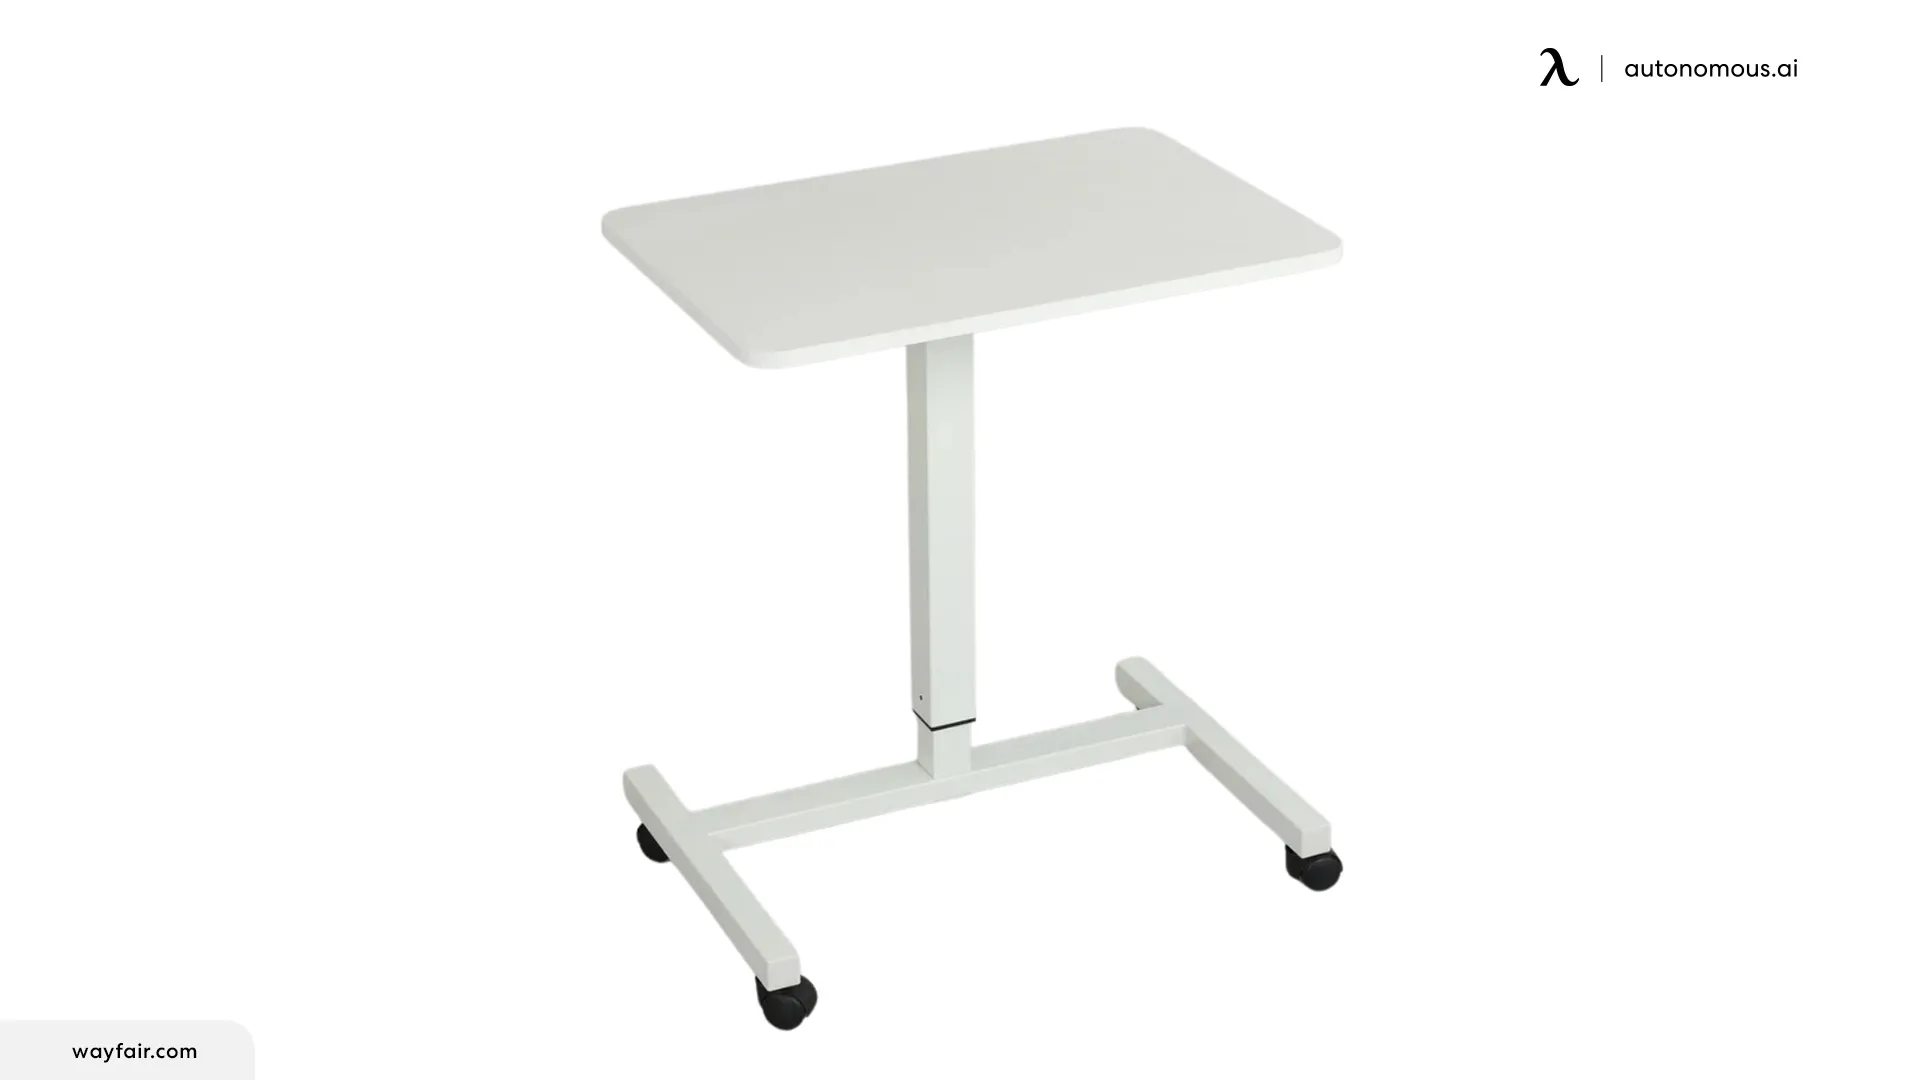 Raygen Pneumatic Height Adjustable Standing Desk